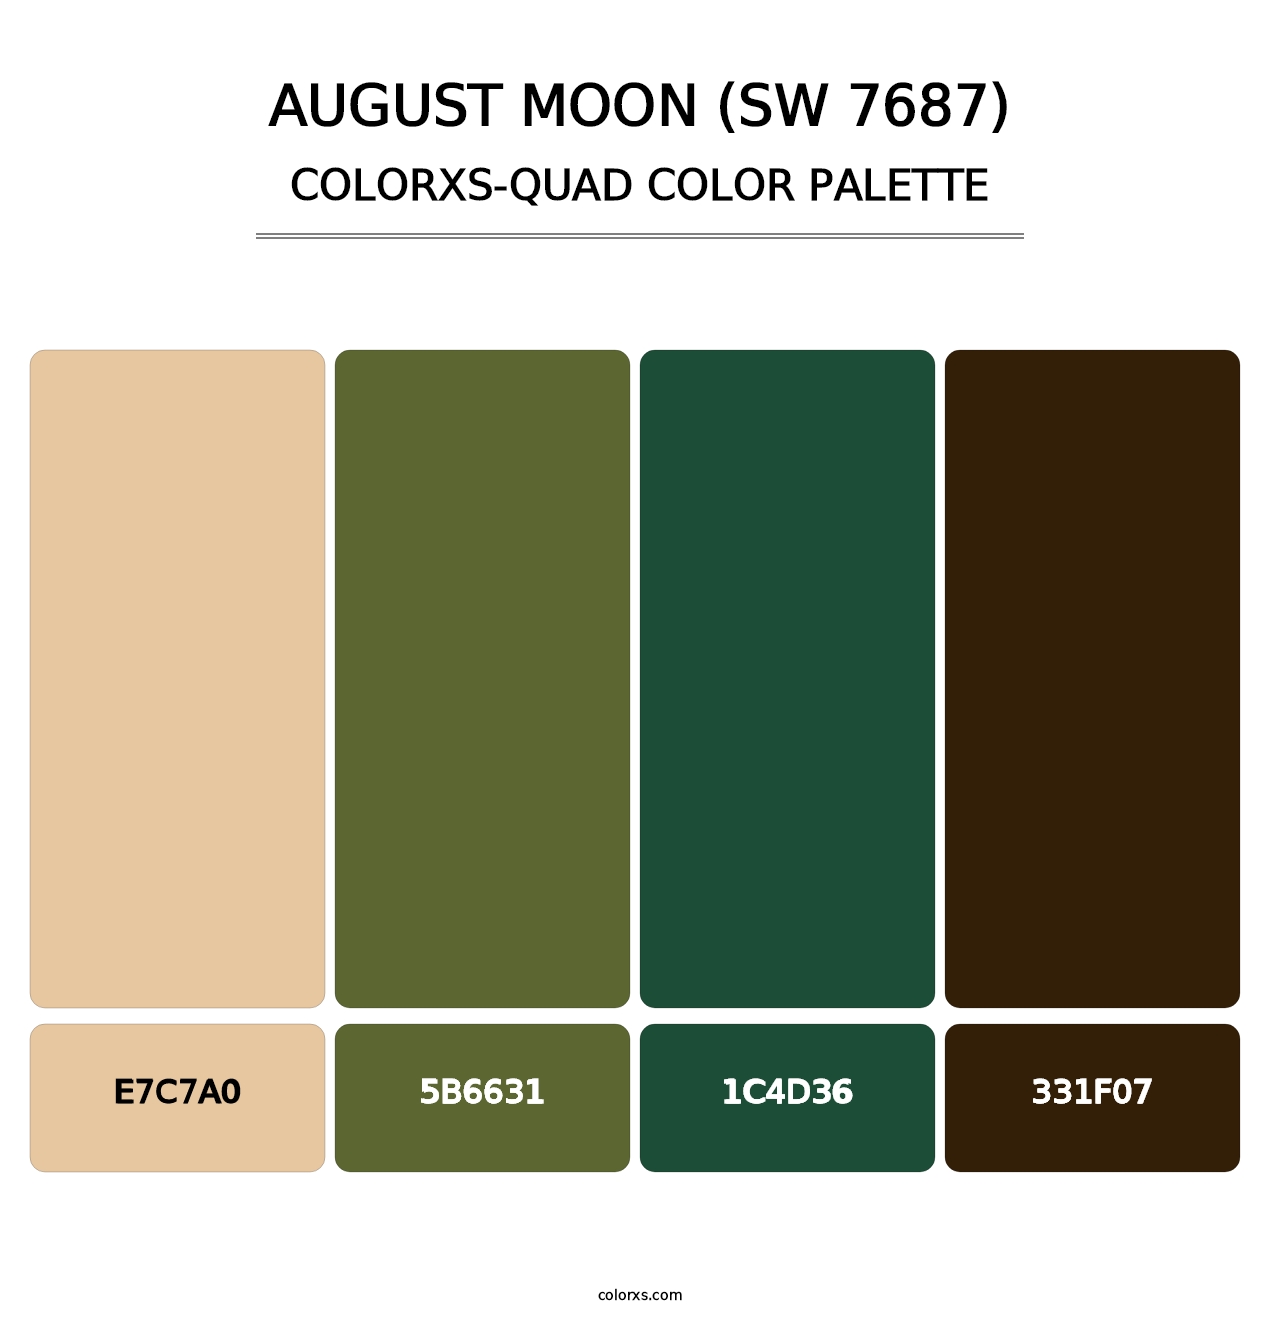 August Moon (SW 7687) - Colorxs Quad Palette